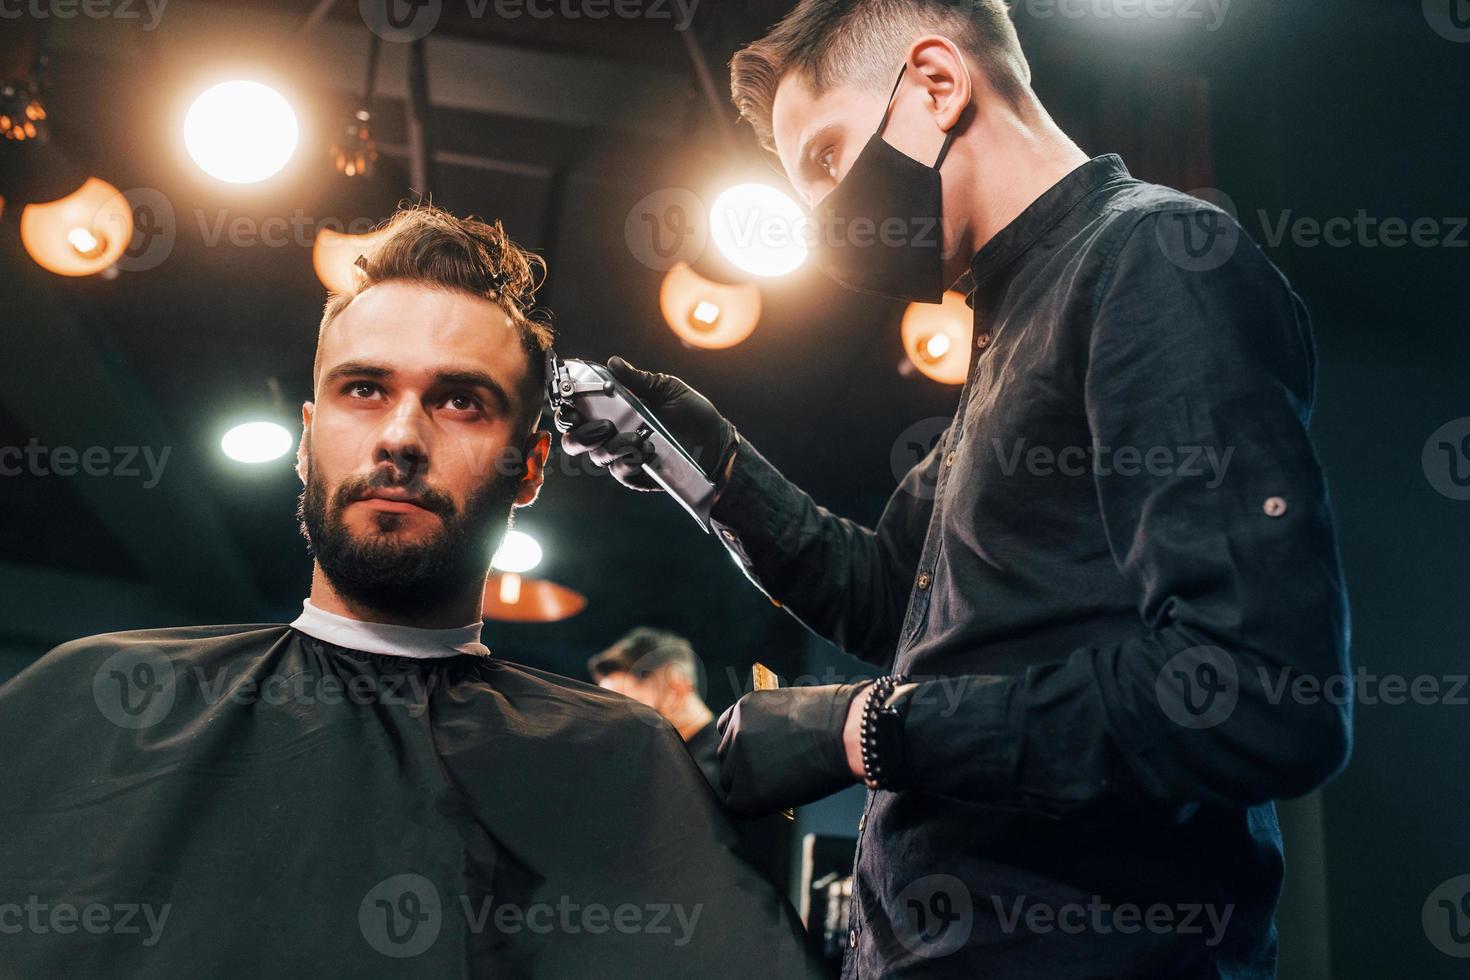 vista frontal do jovem barbudo sentado e cortando o cabelo na barbearia por cara com máscara protetora preta foto